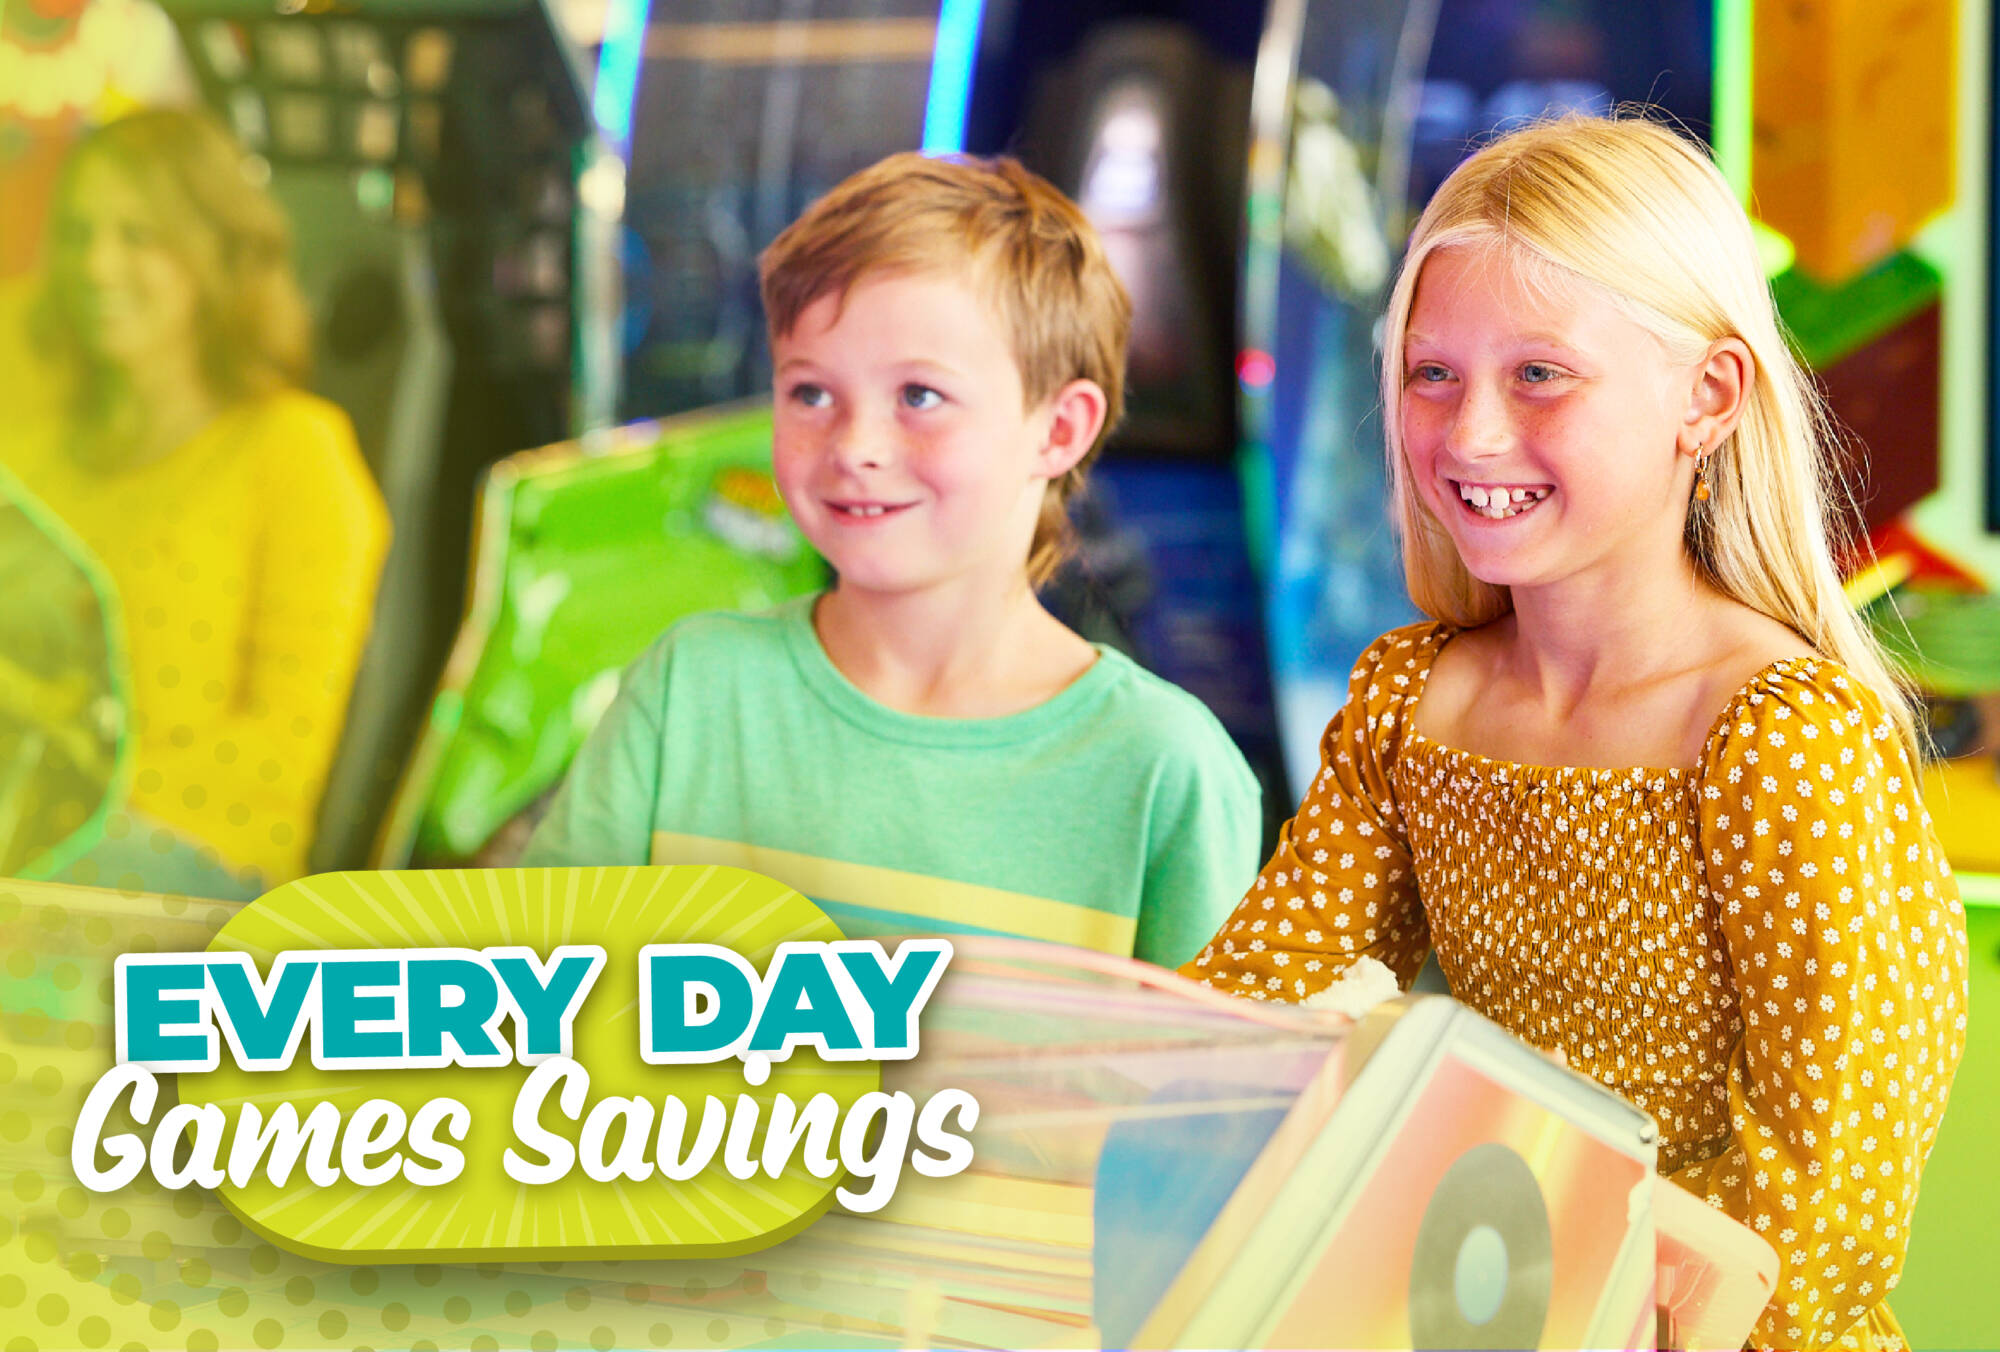 "Every Day Games Savings" kids enjoying a game